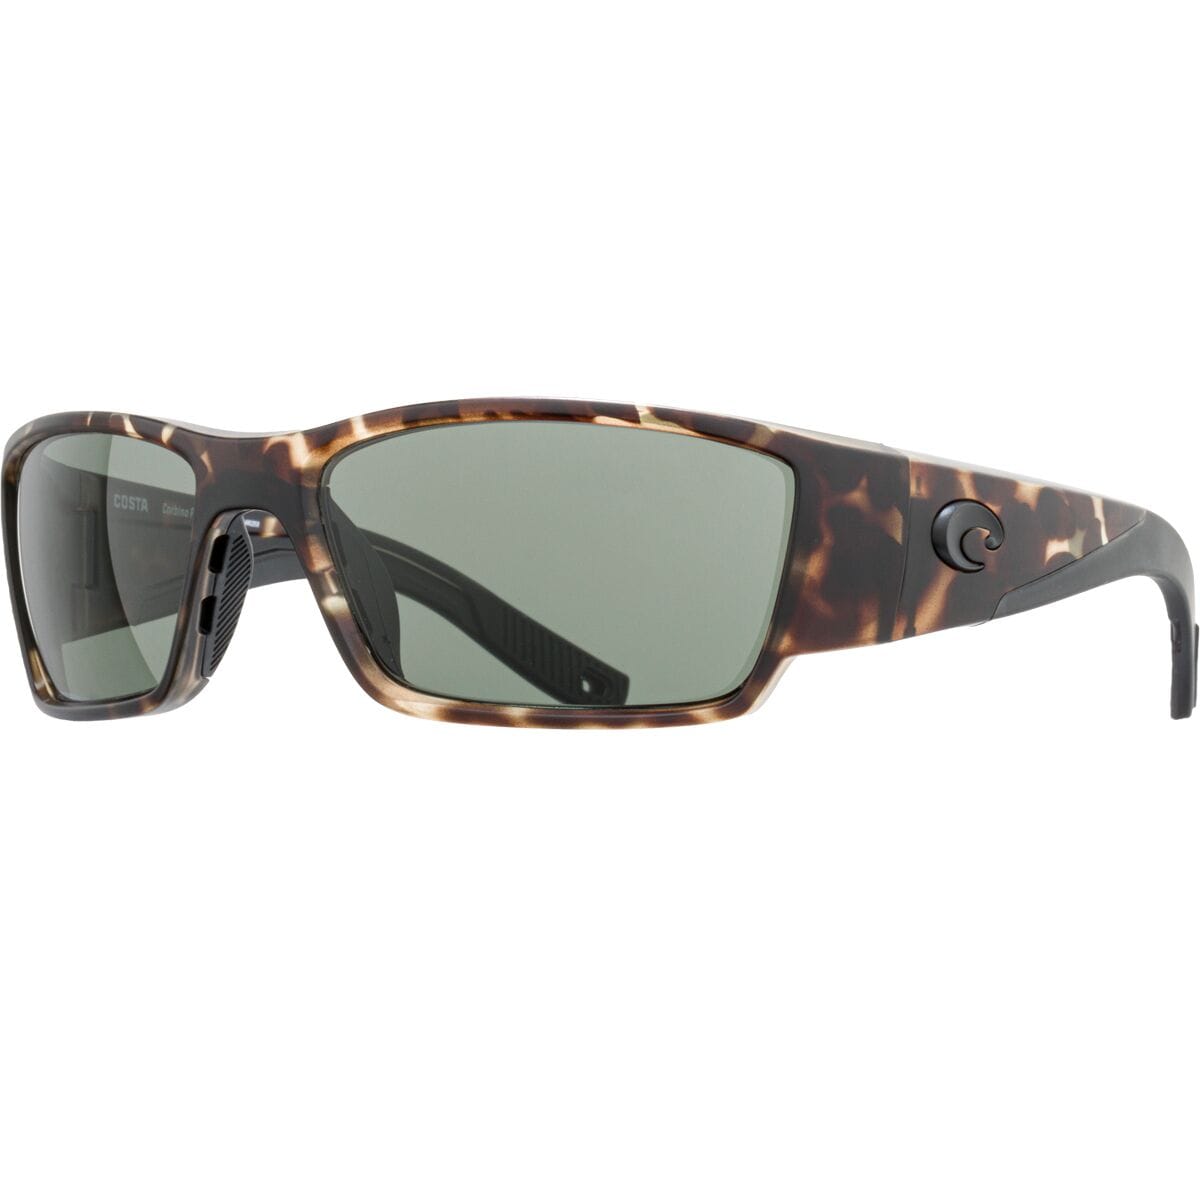 Pre-owned Costa Del Mar Costa Corbina Pro 580g Sunglasses In Wetlands Gray